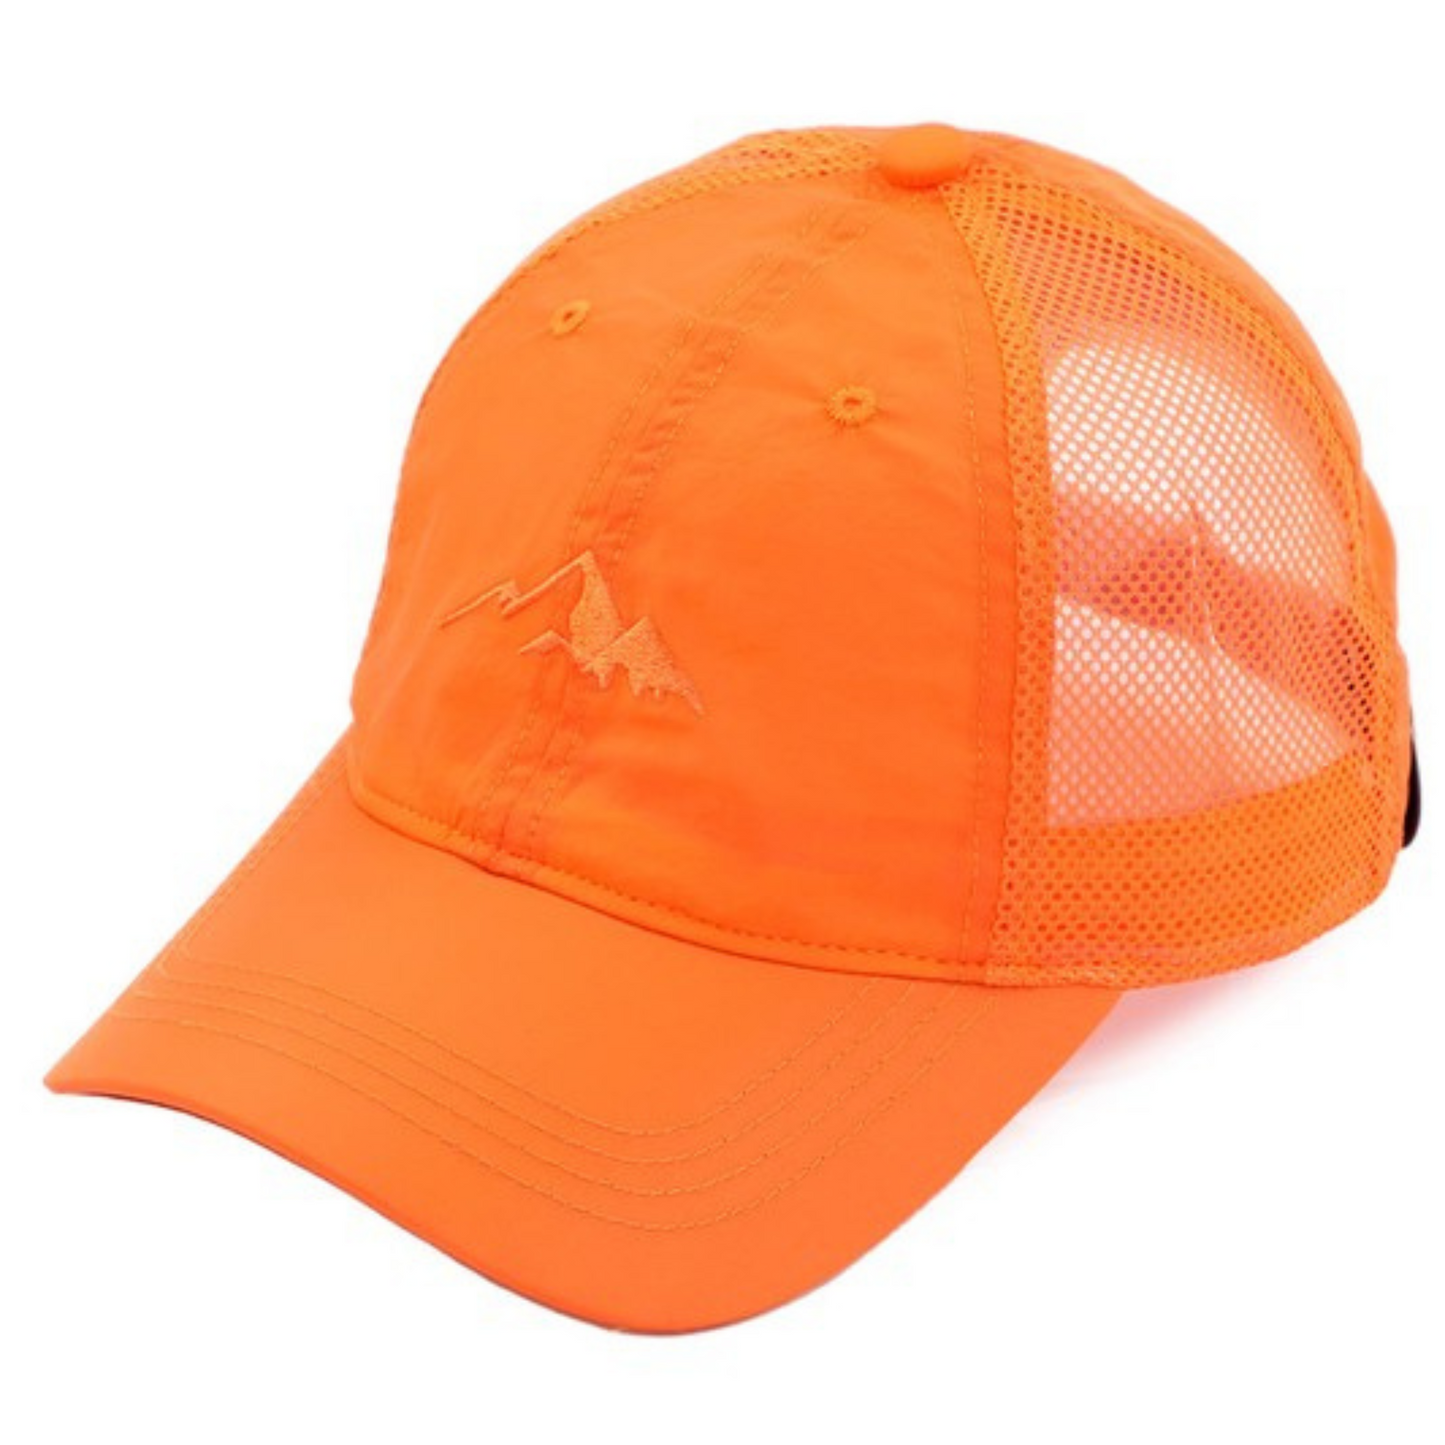 Weightless windbreaker baseball cap in orange